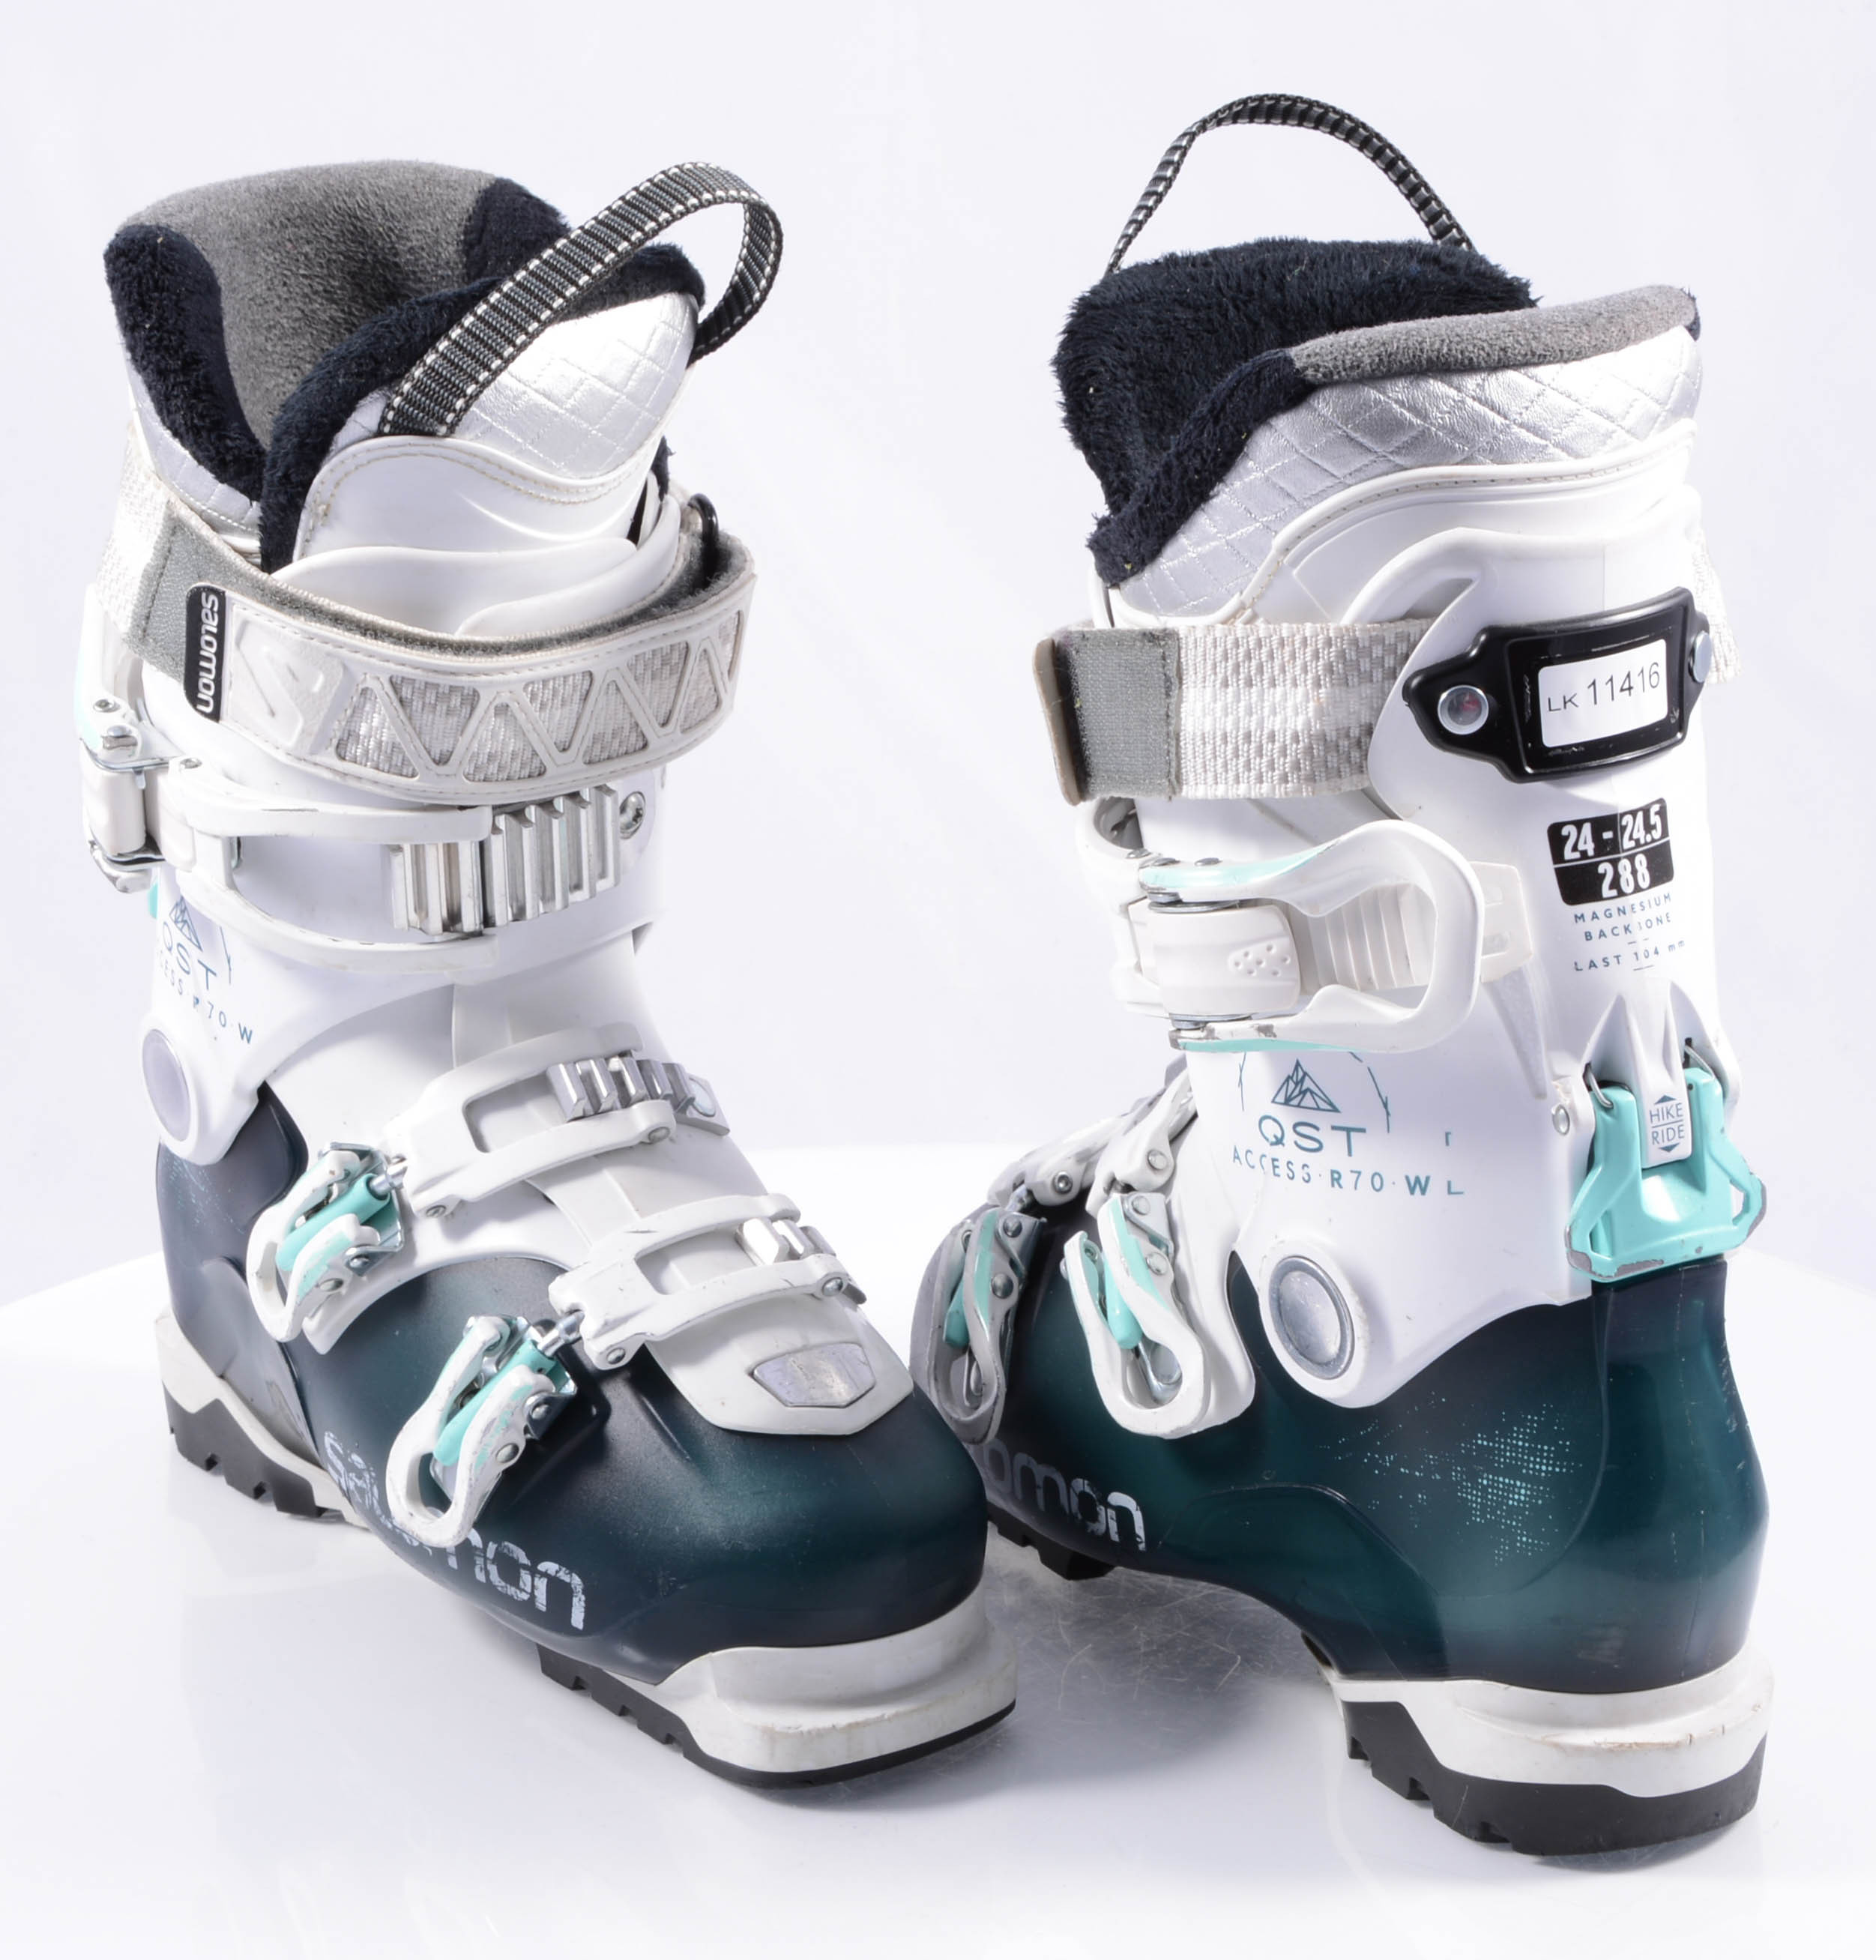 Horen van broeden Slip schoenen women's ski boots SALOMON QST QUEST ACCESS R70 W 2019, hike & ride,  SKI/WALK, macro, blue/white - Mardosport.com